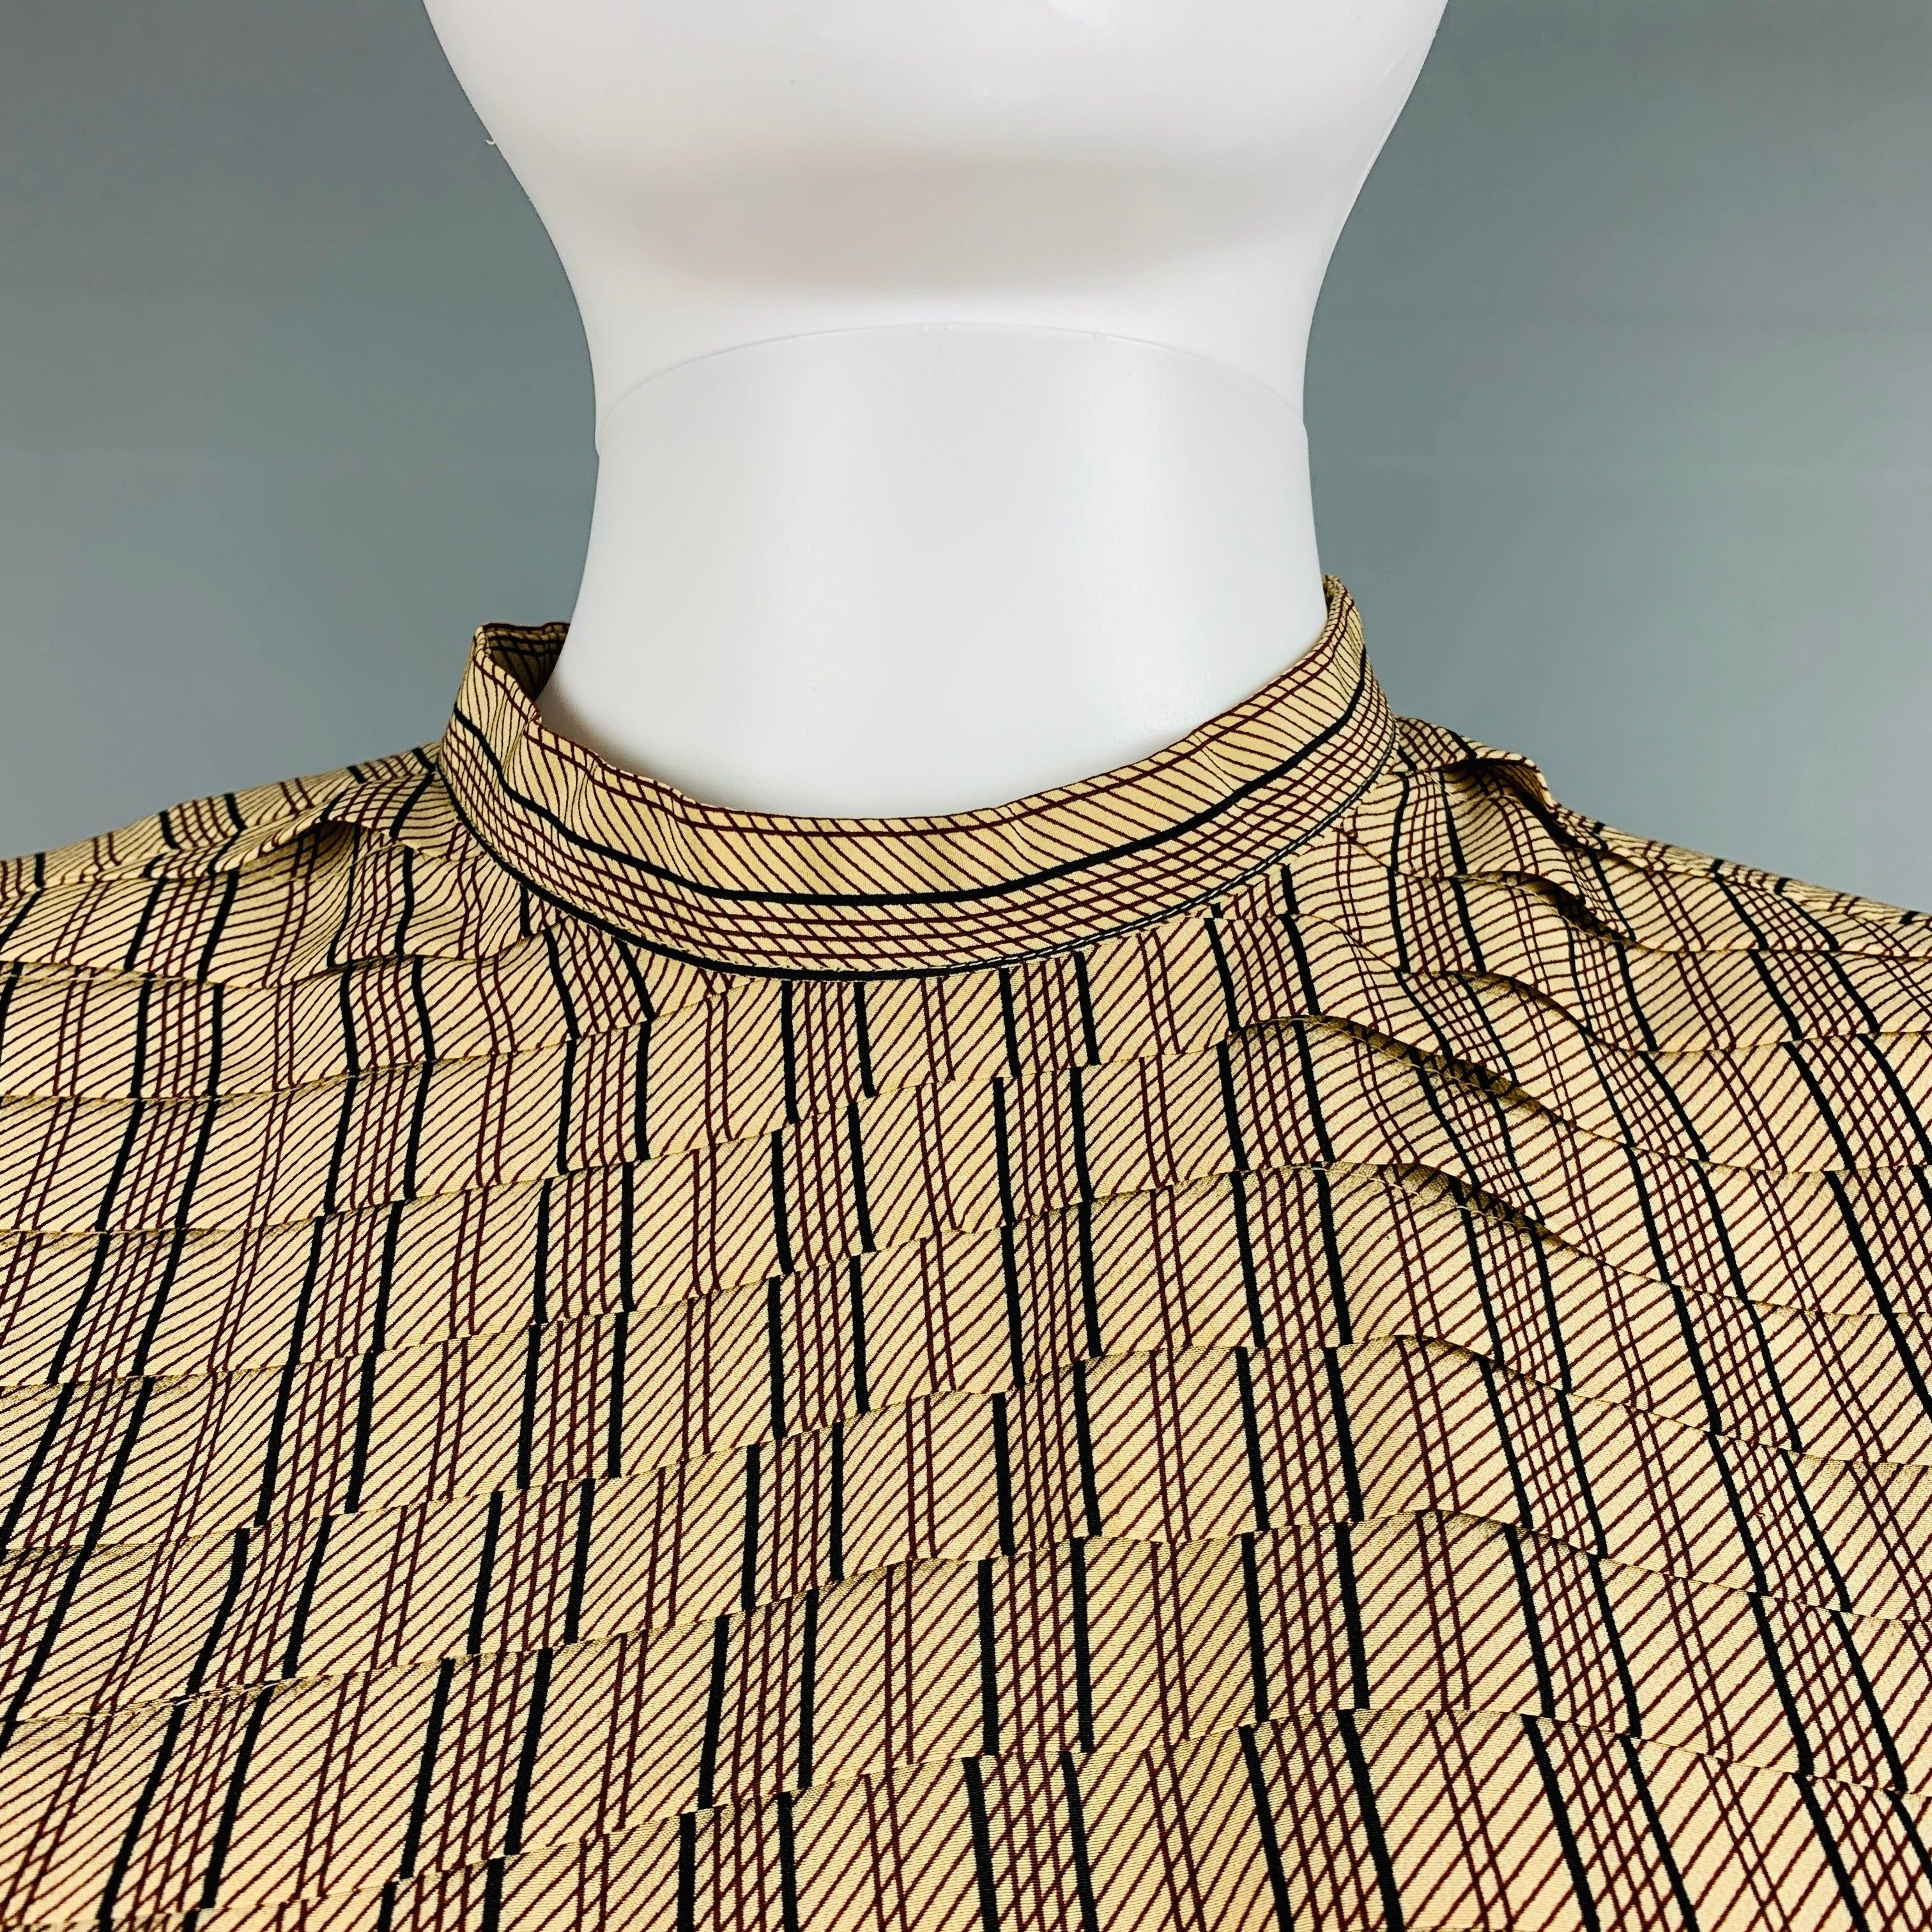 Die langärmelige Bluse von GIORGIO ARMANI aus beige- und bordeauxfarben gestreifter Seide zeichnet sich durch eine plissierte Struktur auf der Vorderseite, Schulterpolster und einen Knopfverschluss auf der Rückseite aus.
Sehr guter gebrauchter